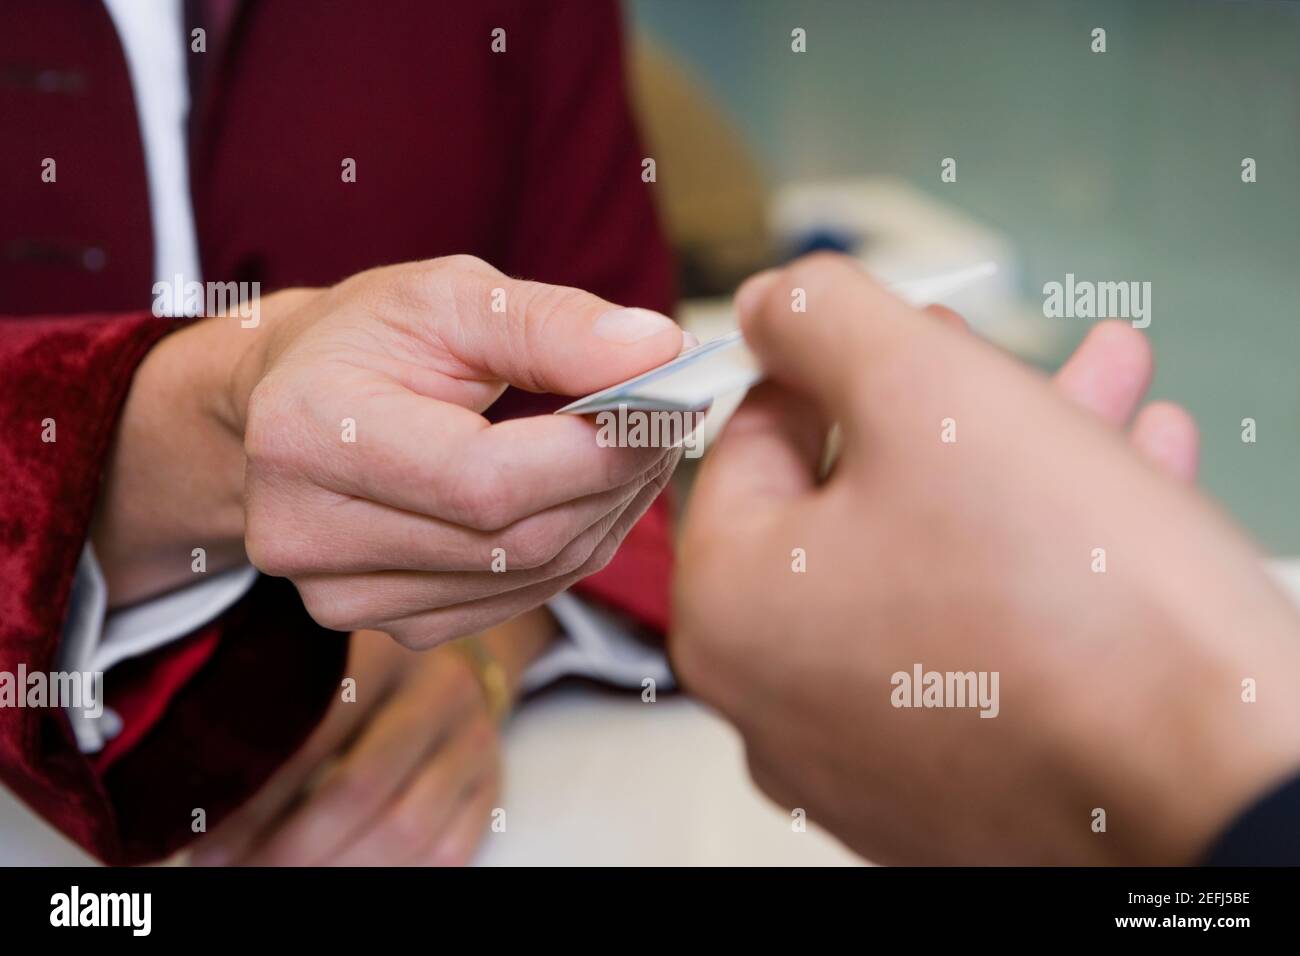 La main du RécepteursVen donnant la clé à un client Banque D'Images